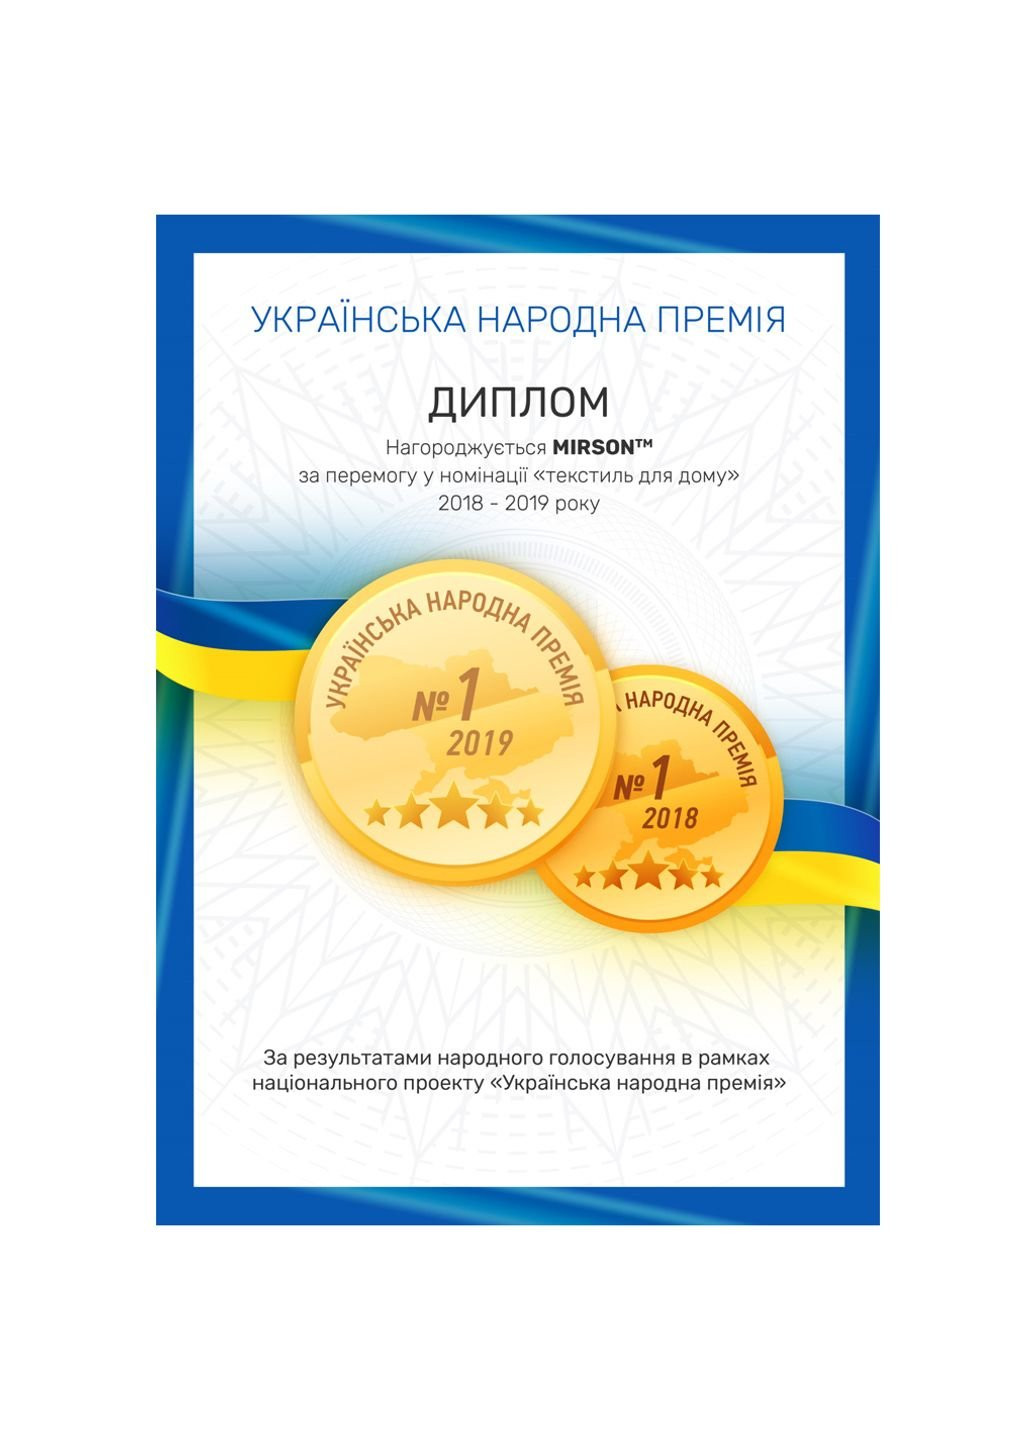 No Brand полотенце mirson набор банный №5002 softness cornflower 50x90, 70x140, 100x15 (2200003182620) голубой производство - Украина